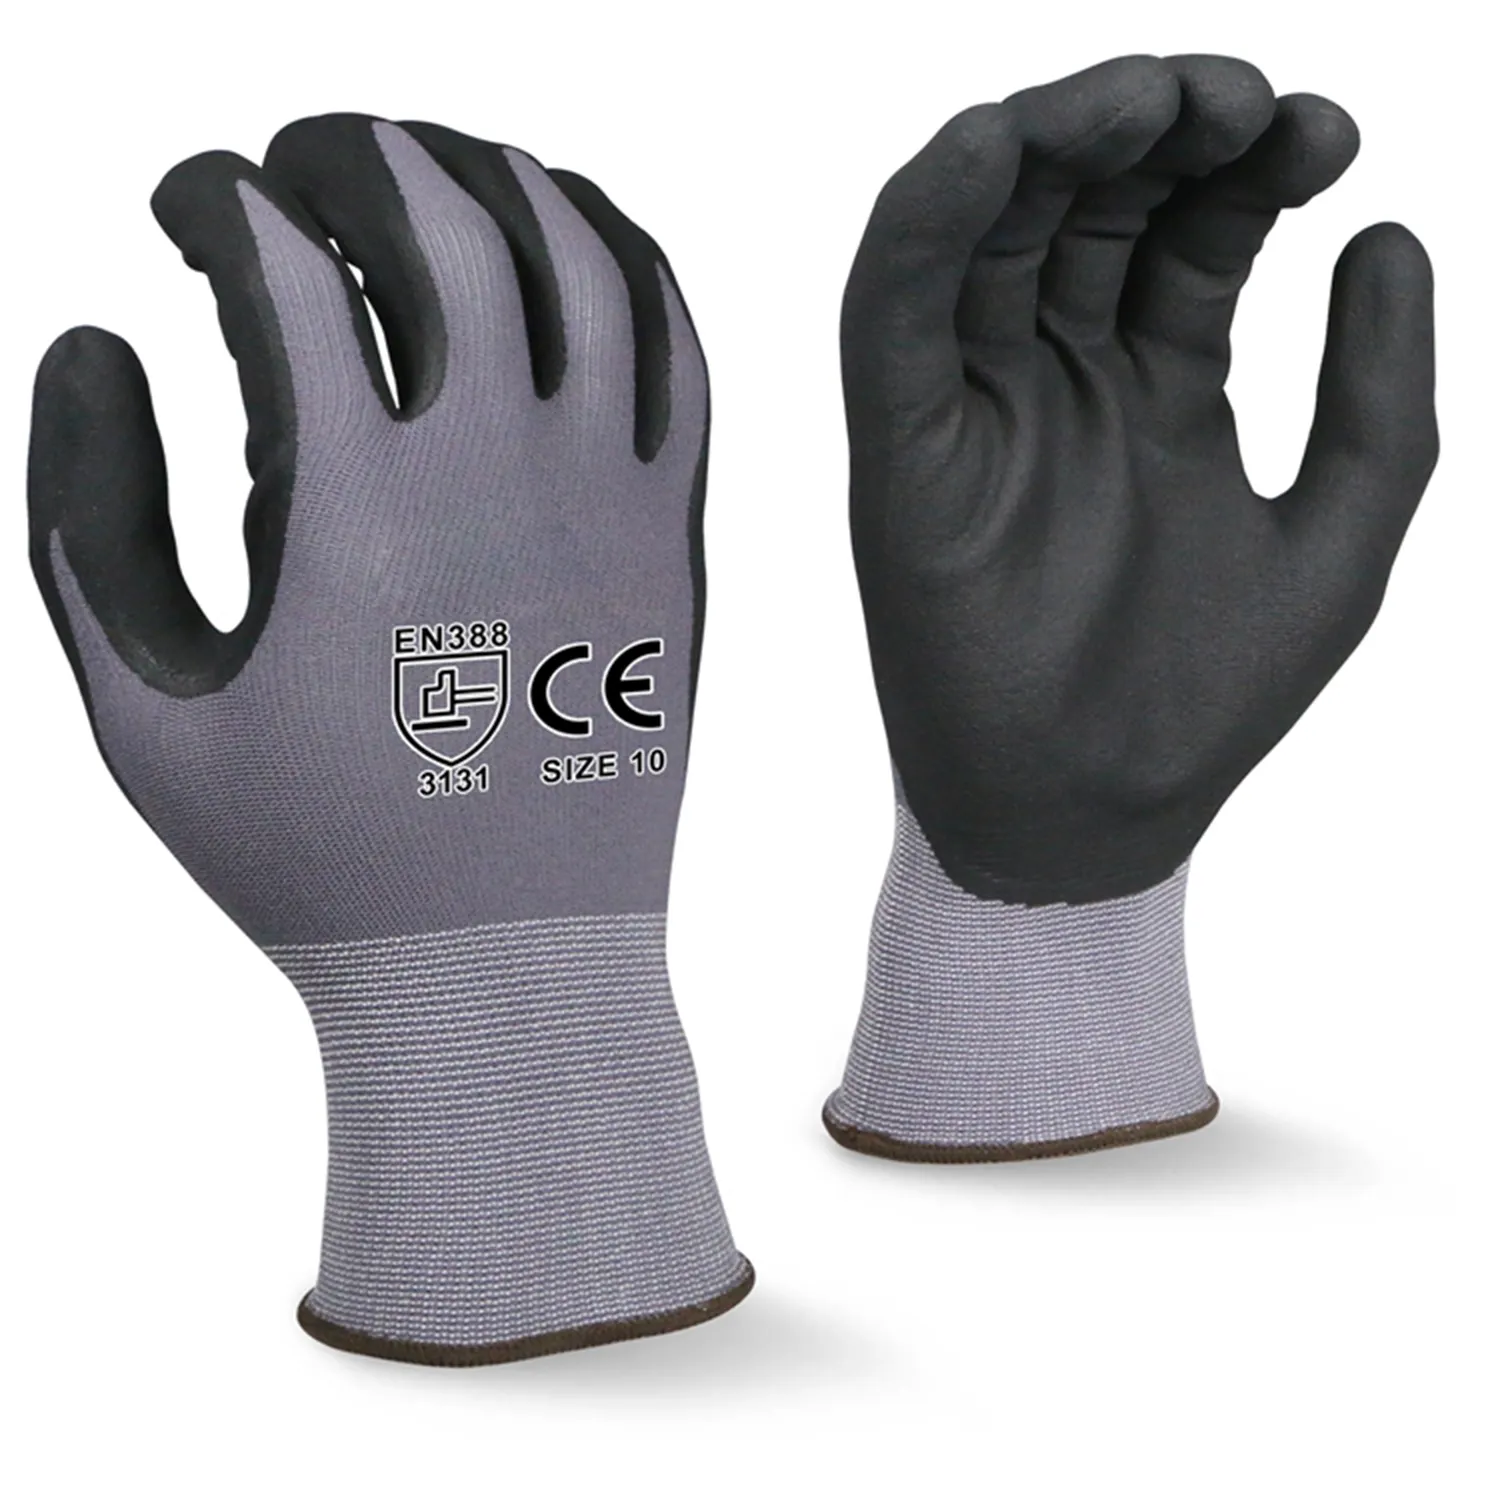 Schützende hand geprüfte CE 3121x Schaum nitril beschichtete Sicherheits arbeiten industrielle latex pulver freie anti statische Stoff arbeits handschuhe